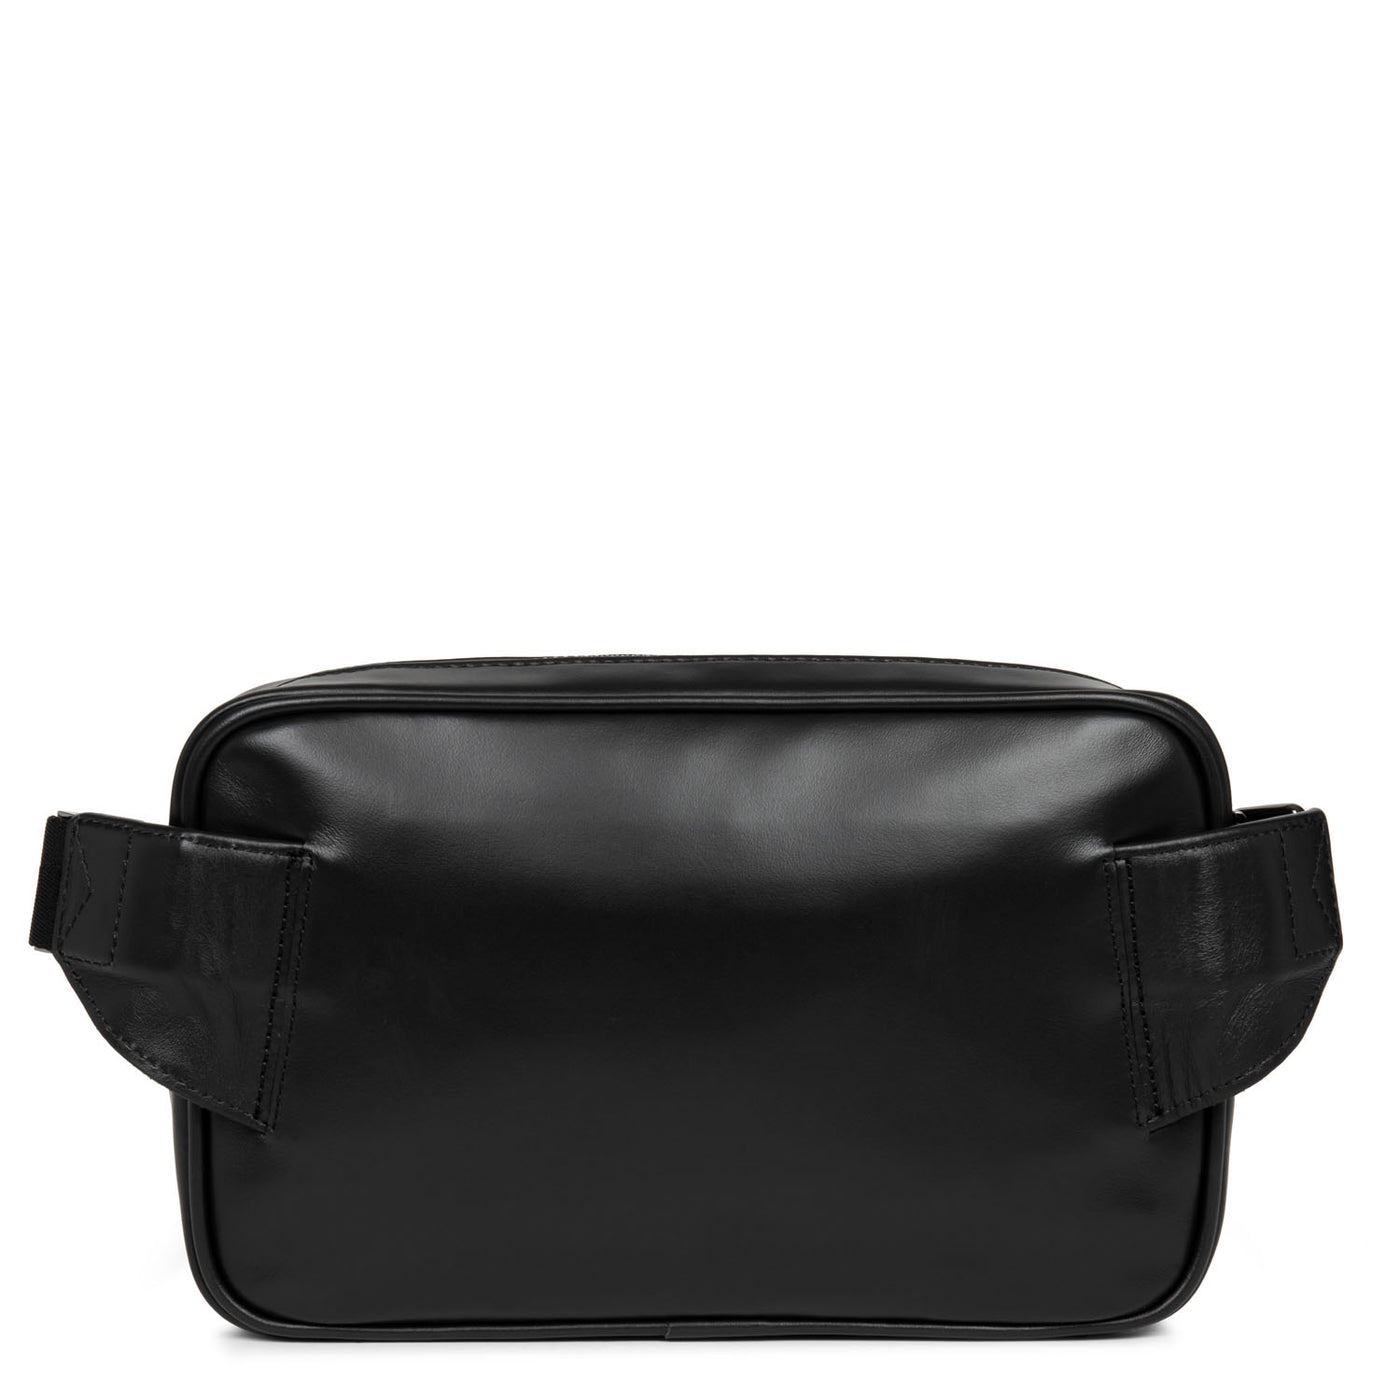 grand sac porté ceinture - capital #couleur_noir